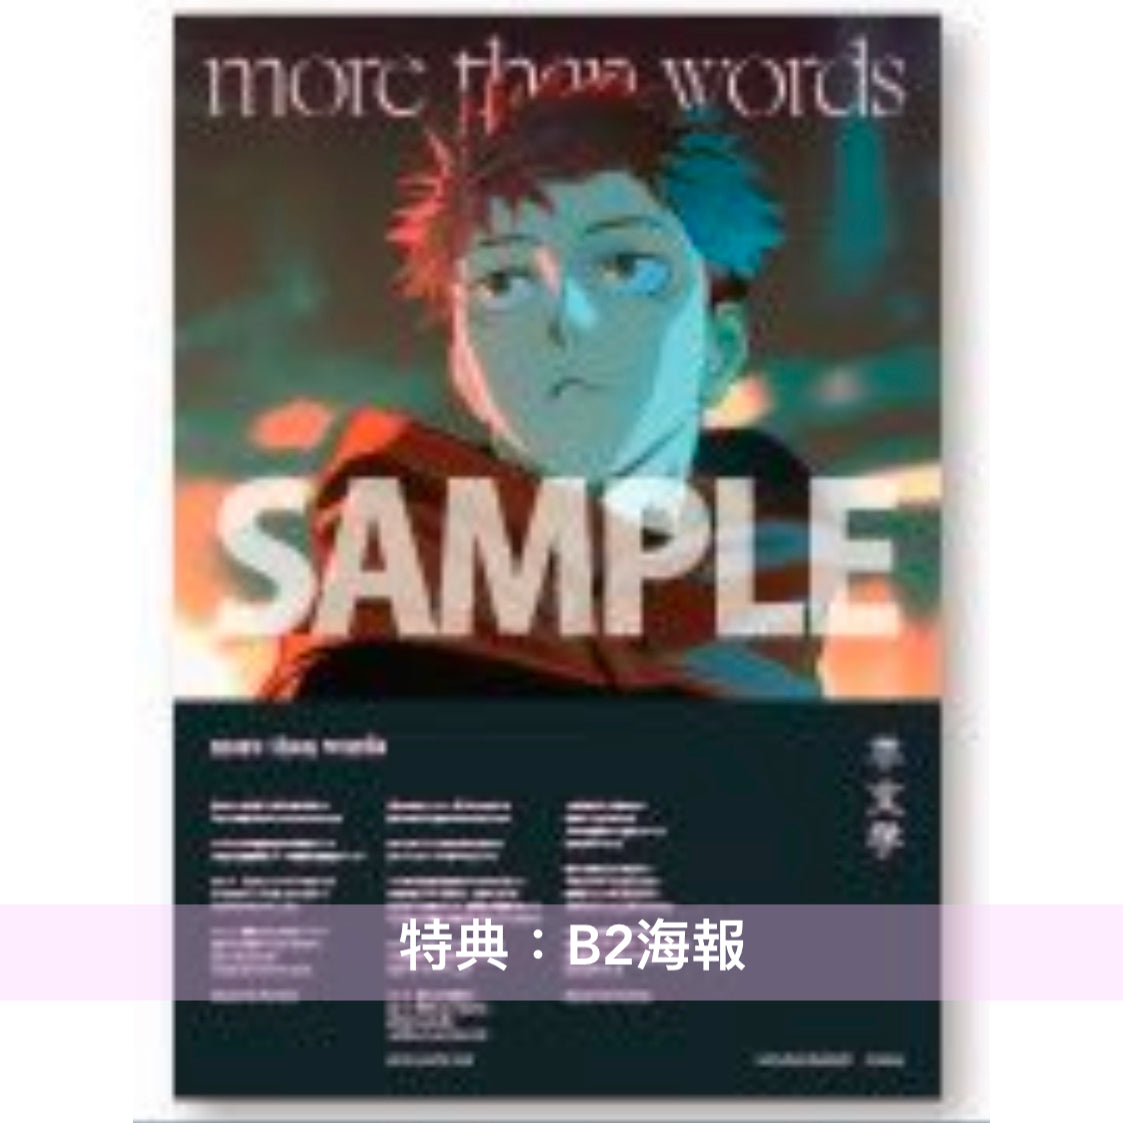 呪術廻戦』「渋谷事変」 片尾曲・羊文学單曲CD《more than words 